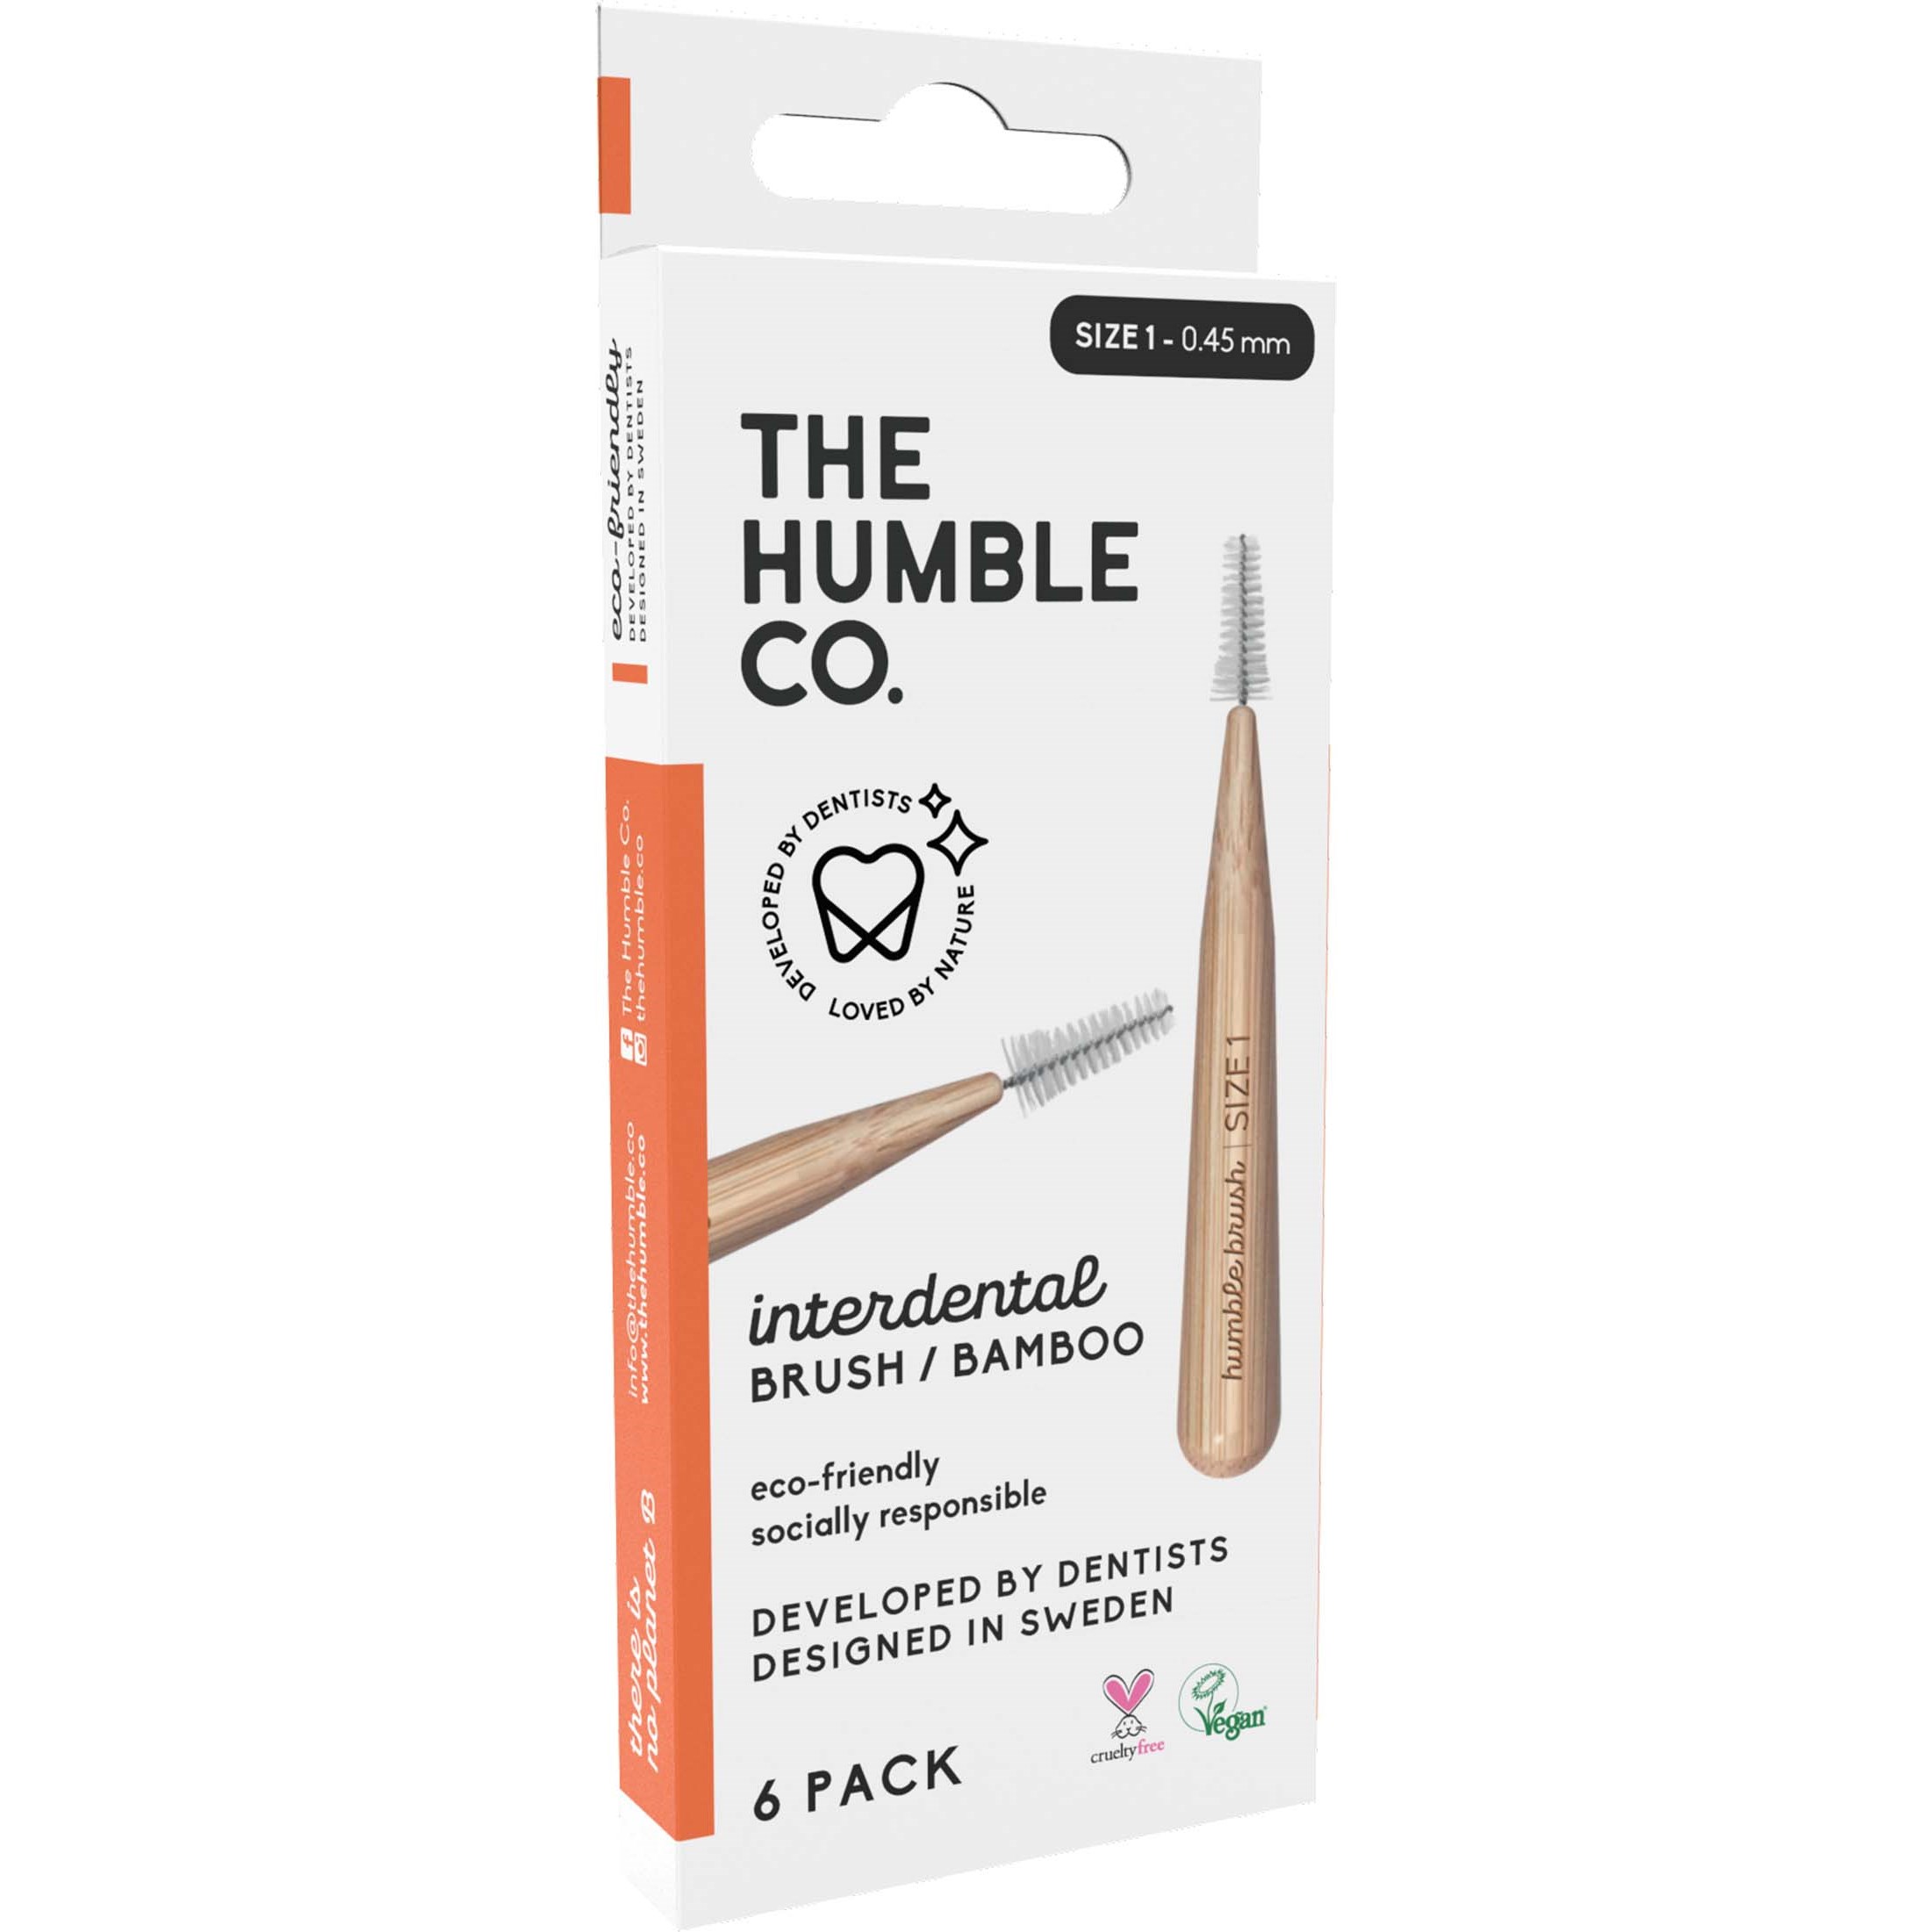 Bilde av The Humble Co. Interdental Bamboo Brush 6-pack Size 1 Orange